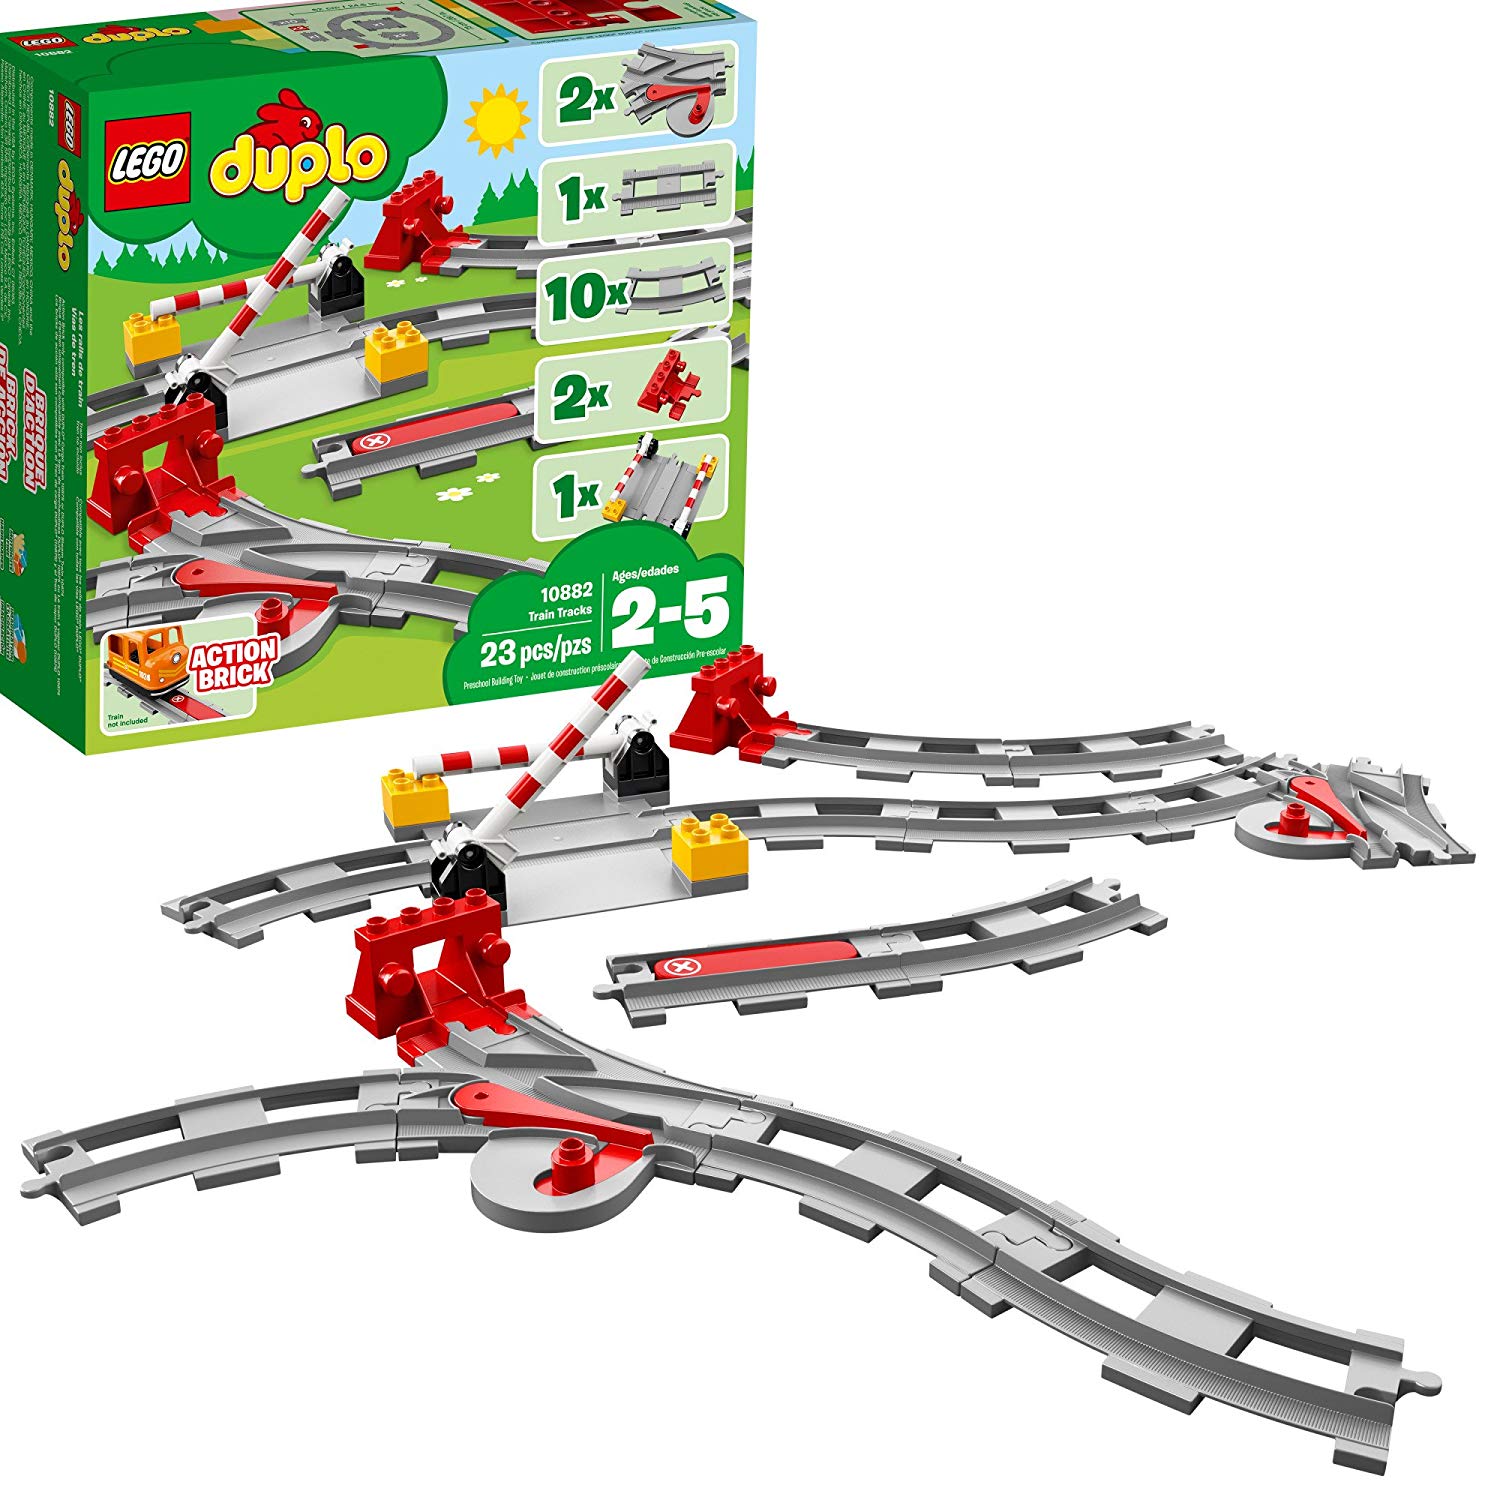 Lego Duplo 10882 Railway Rail Extension Kit (23 Pieces) 2018